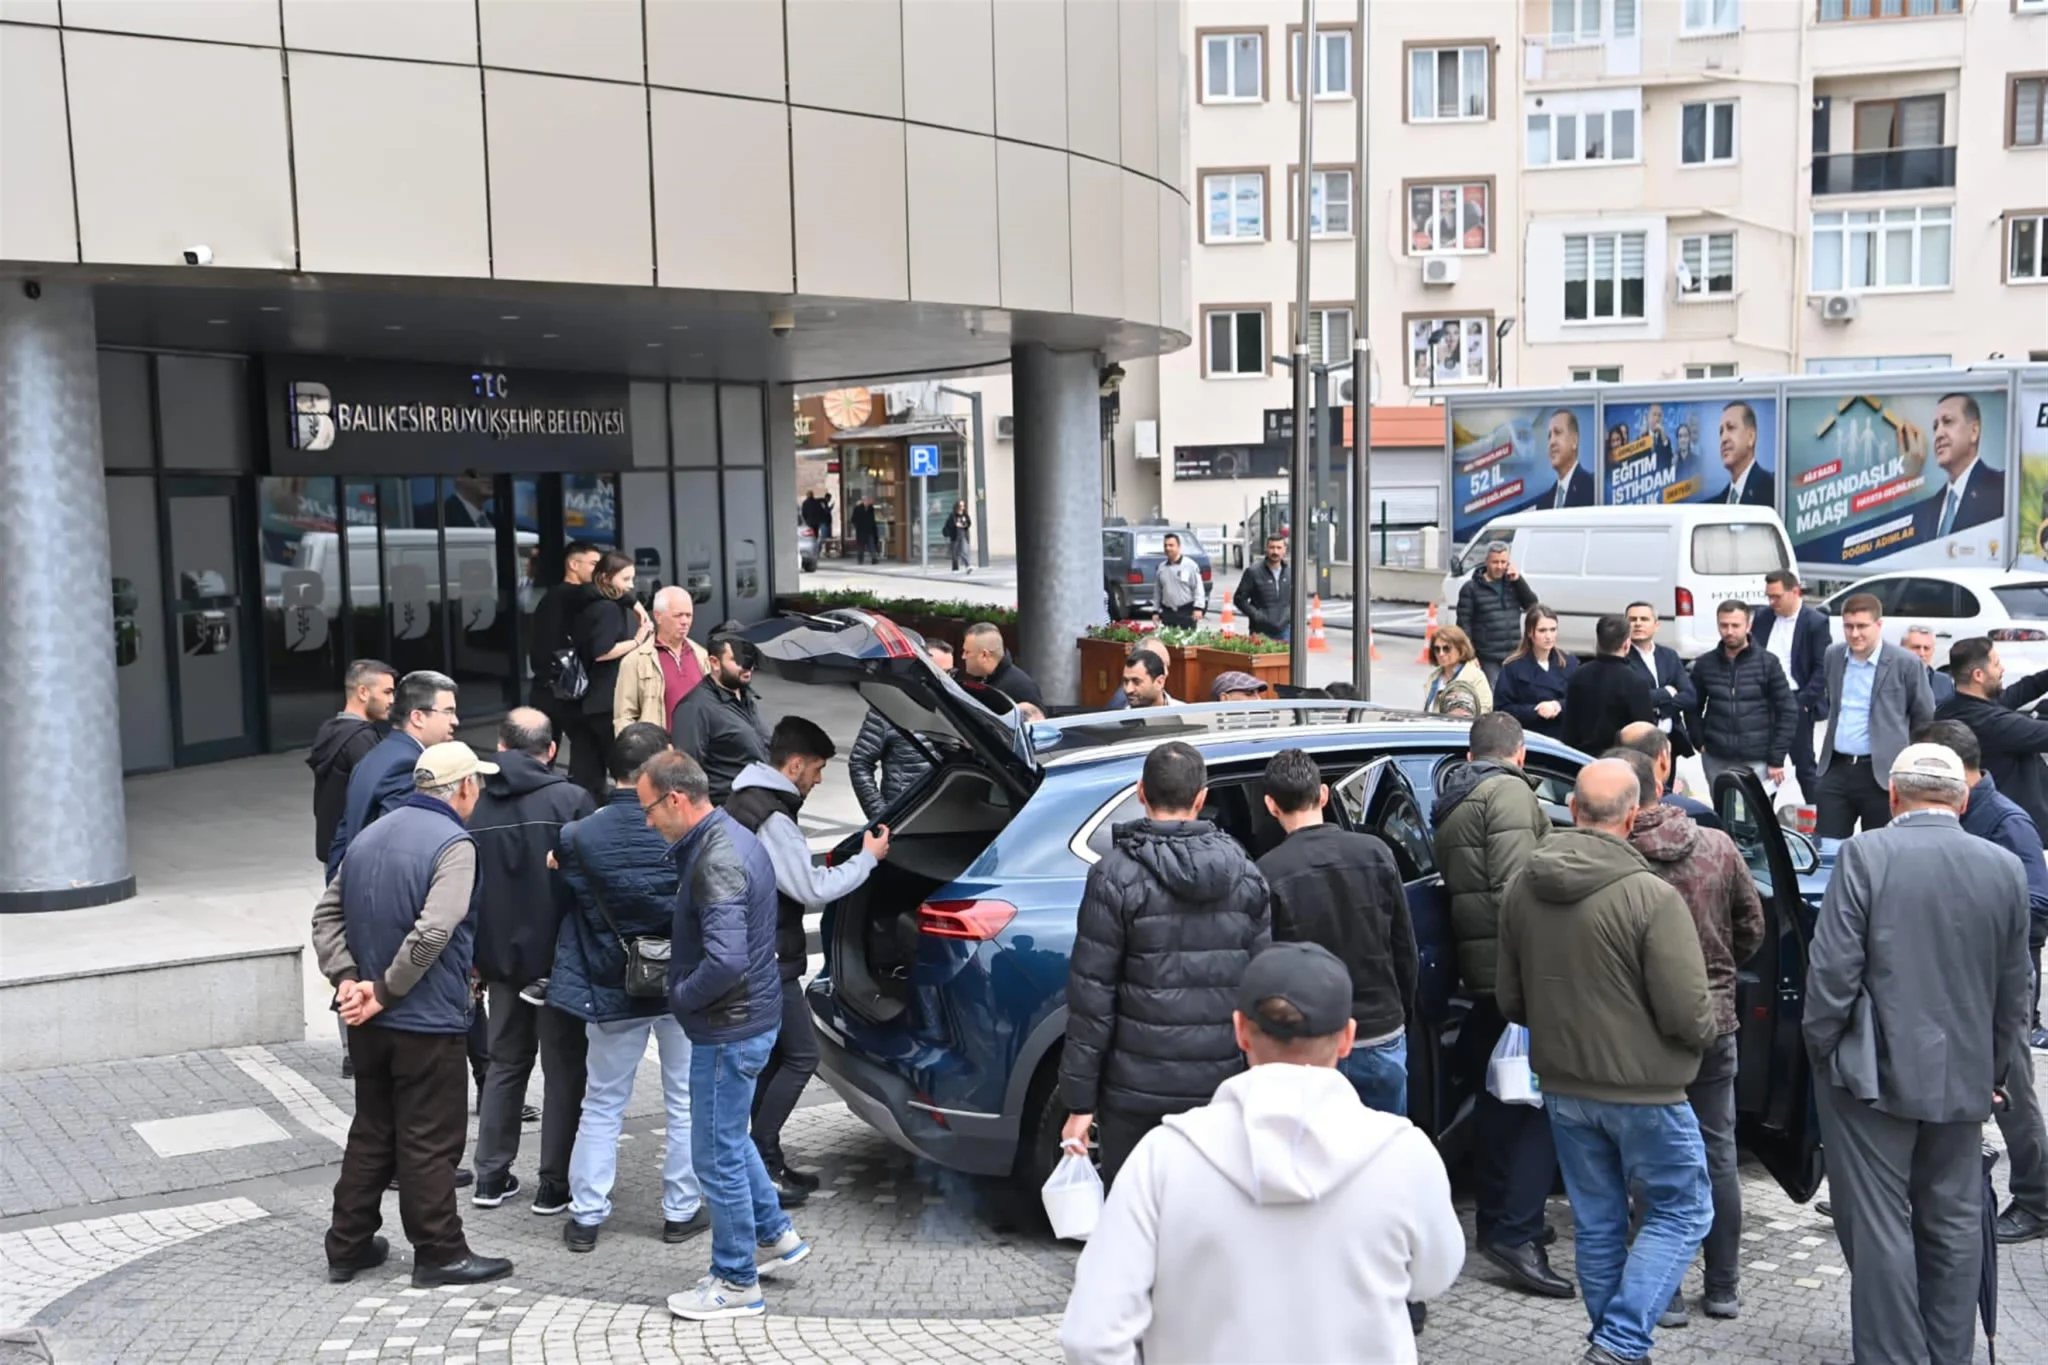 Balıkesir Büyükşehir Belediye Başkanı Yücel Yılmaz, makam aracı olarak kullanacağı TOGG’u, belediye binası önünde teslim aldı. TOGG’u karşılarında gören vatandaşlar, inceleyerek fotoğraf çekildi.